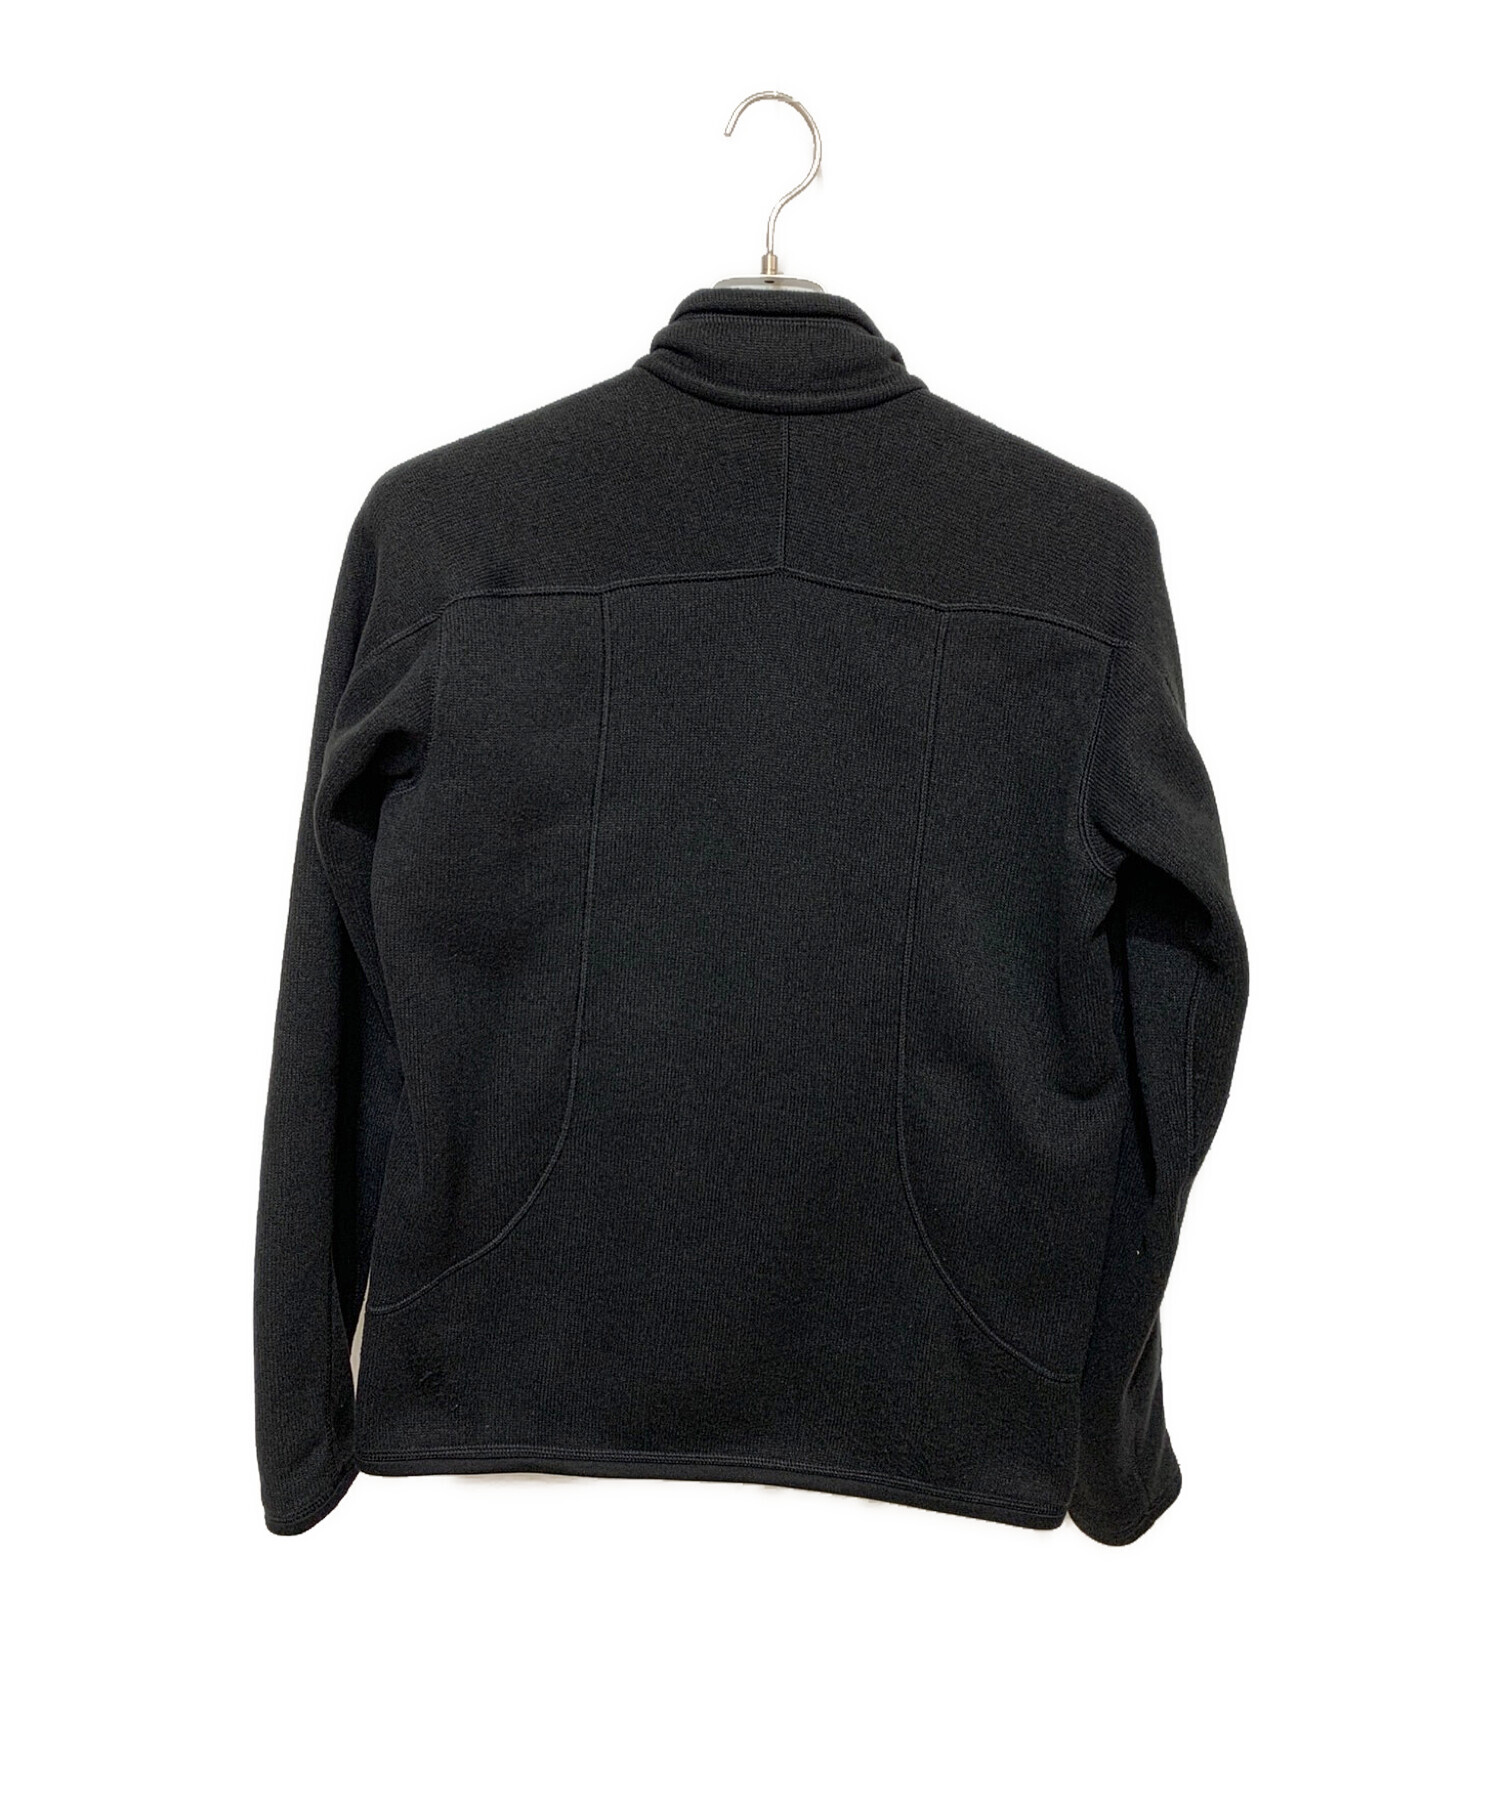 Patagonia (パタゴニア) ベターセーターフリースジャケット ブラック サイズ:XS